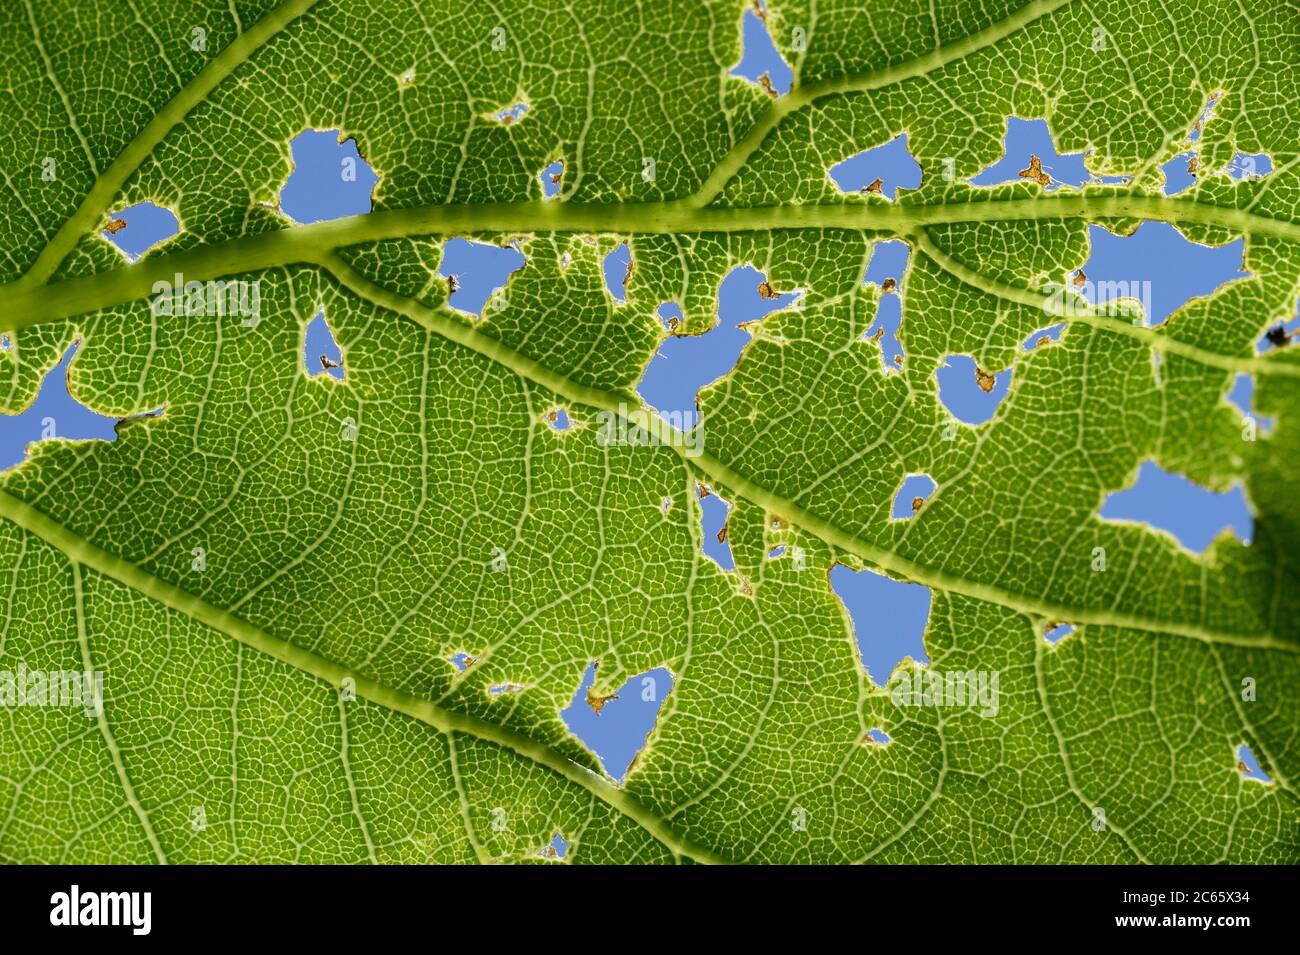 Fütterungsspuren in einem Blatt der stieligen Eiche (Quercus robur) Biosphärenreservat Niedersächsische Elbtalaue, Deutschland Stockfoto